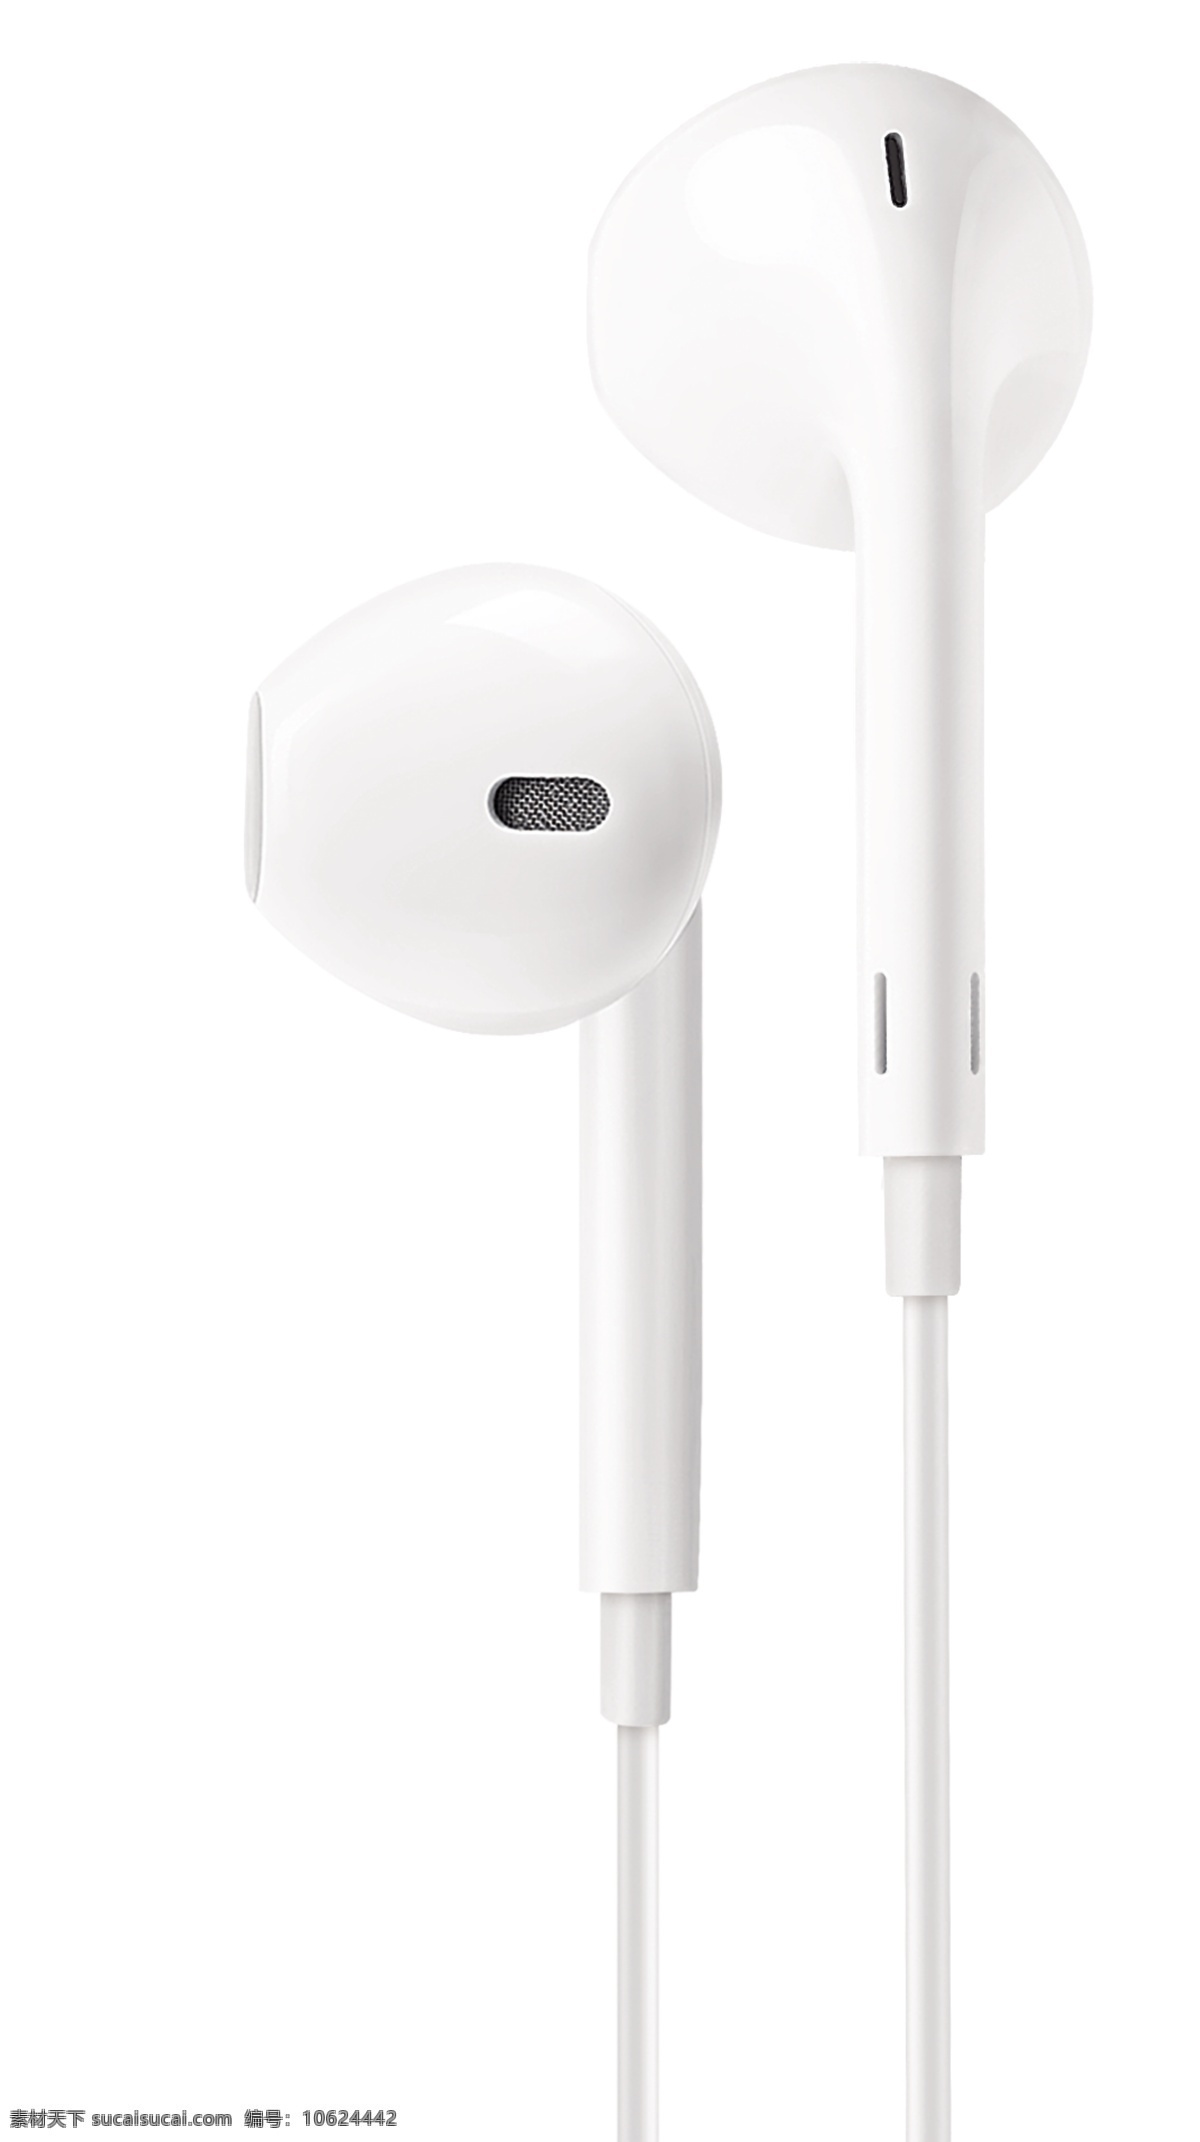 3 苹果耳机 线控耳机 有线耳机 耳塞 白色 精修图 分层